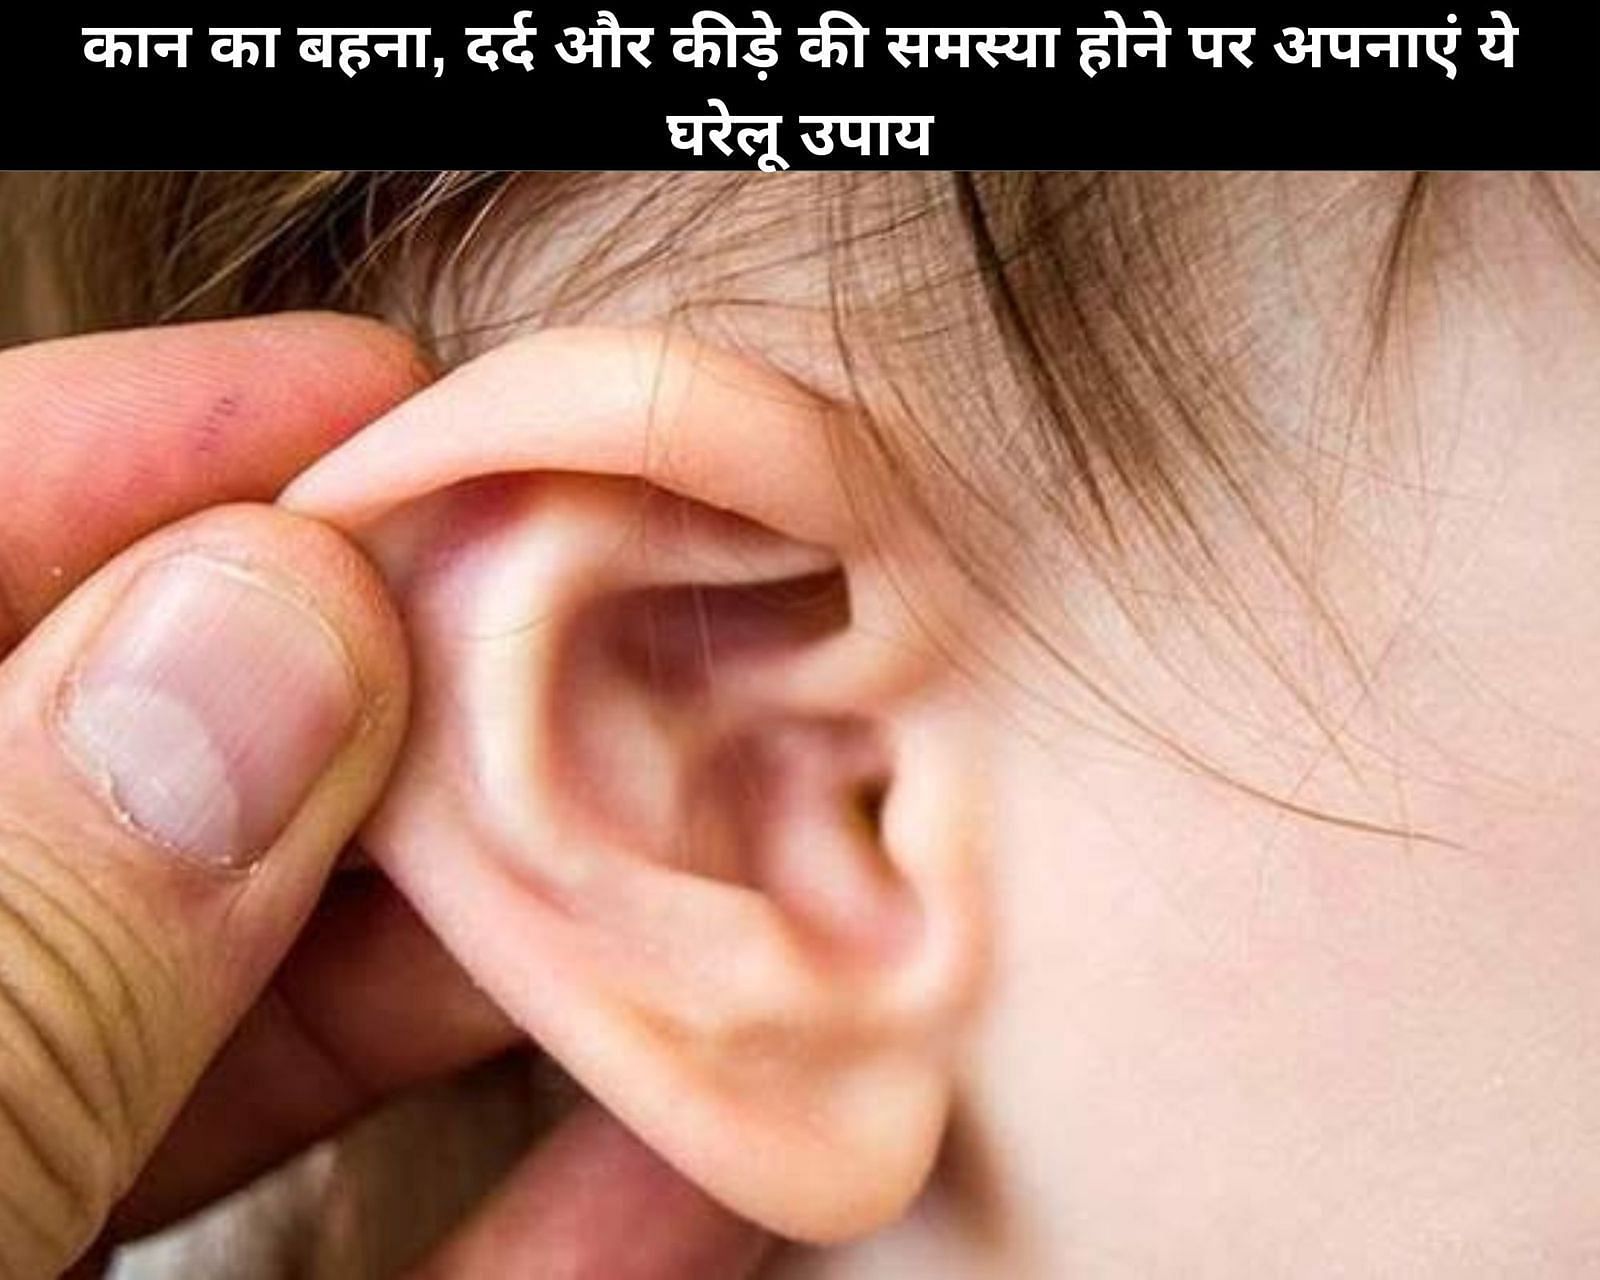 कान का बहना, दर्द और कीड़े की समस्या होने पर अपनाएं ये 7 घरेलू उपाय (फोटो - sportskeedaहिन्दी)